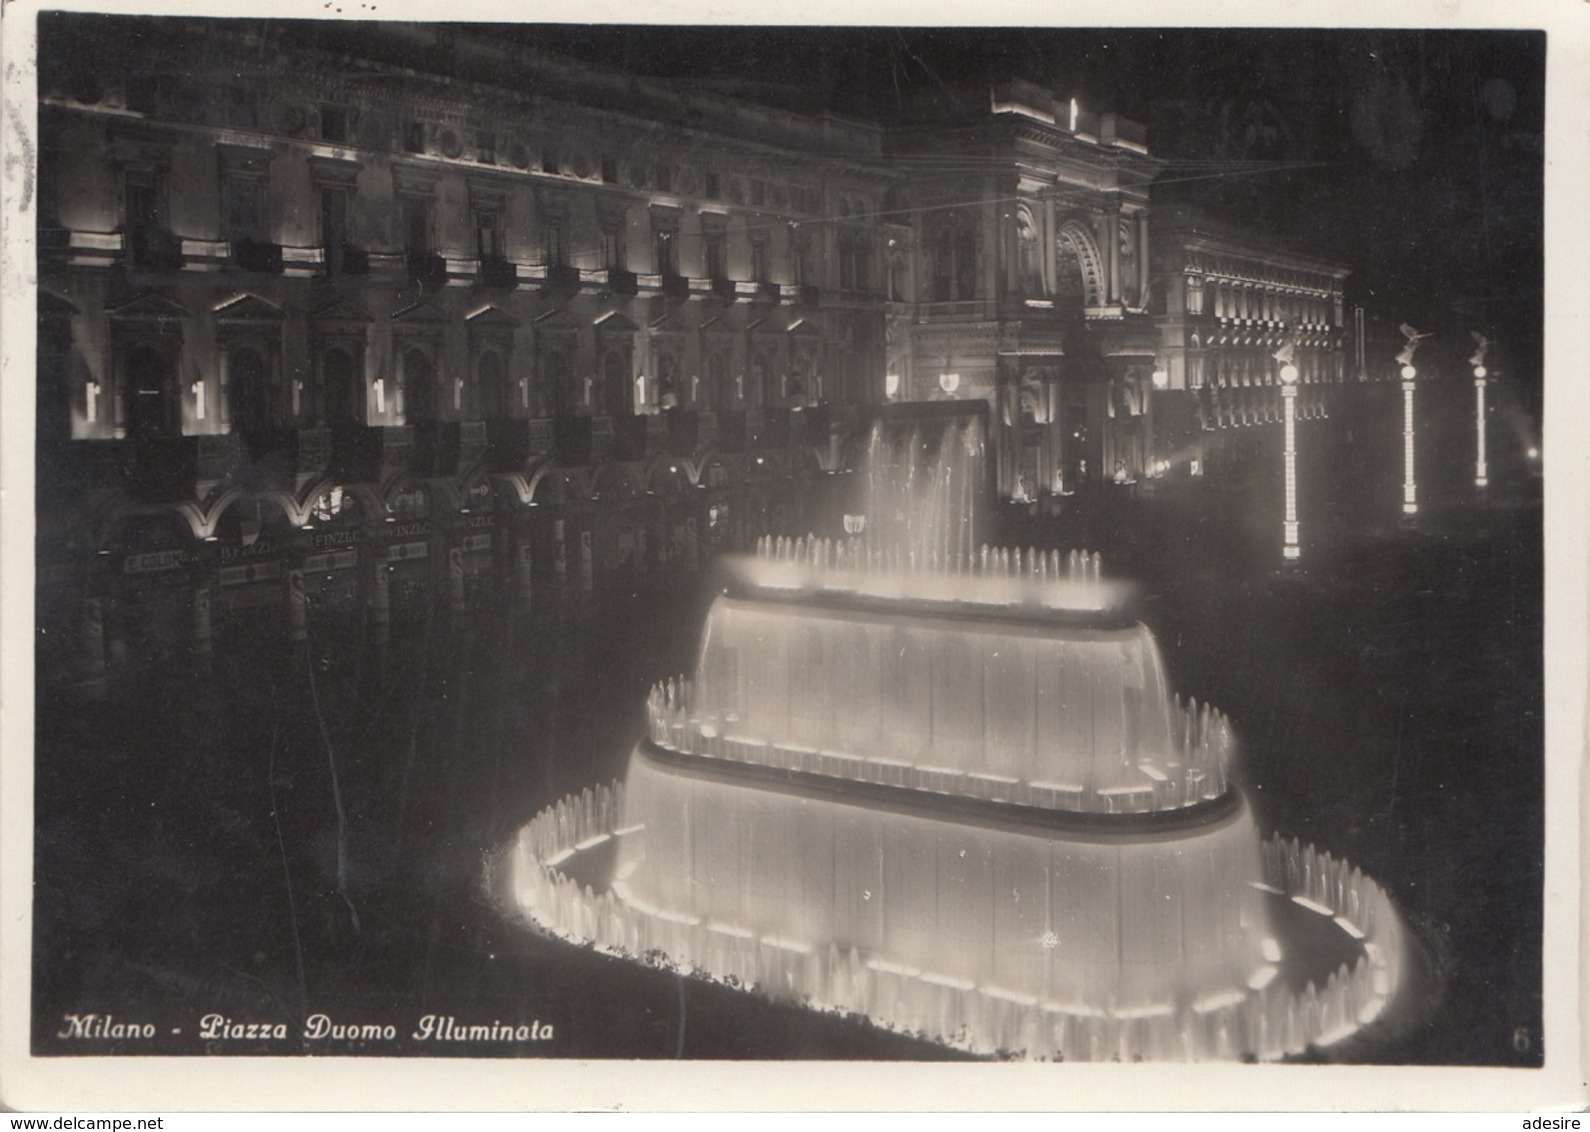 MILANO - Piazza Duomo Illuminata, Gel.1934, Seltene Militaria Frankierung, Gute Erhaltung - Militärpost (MP)